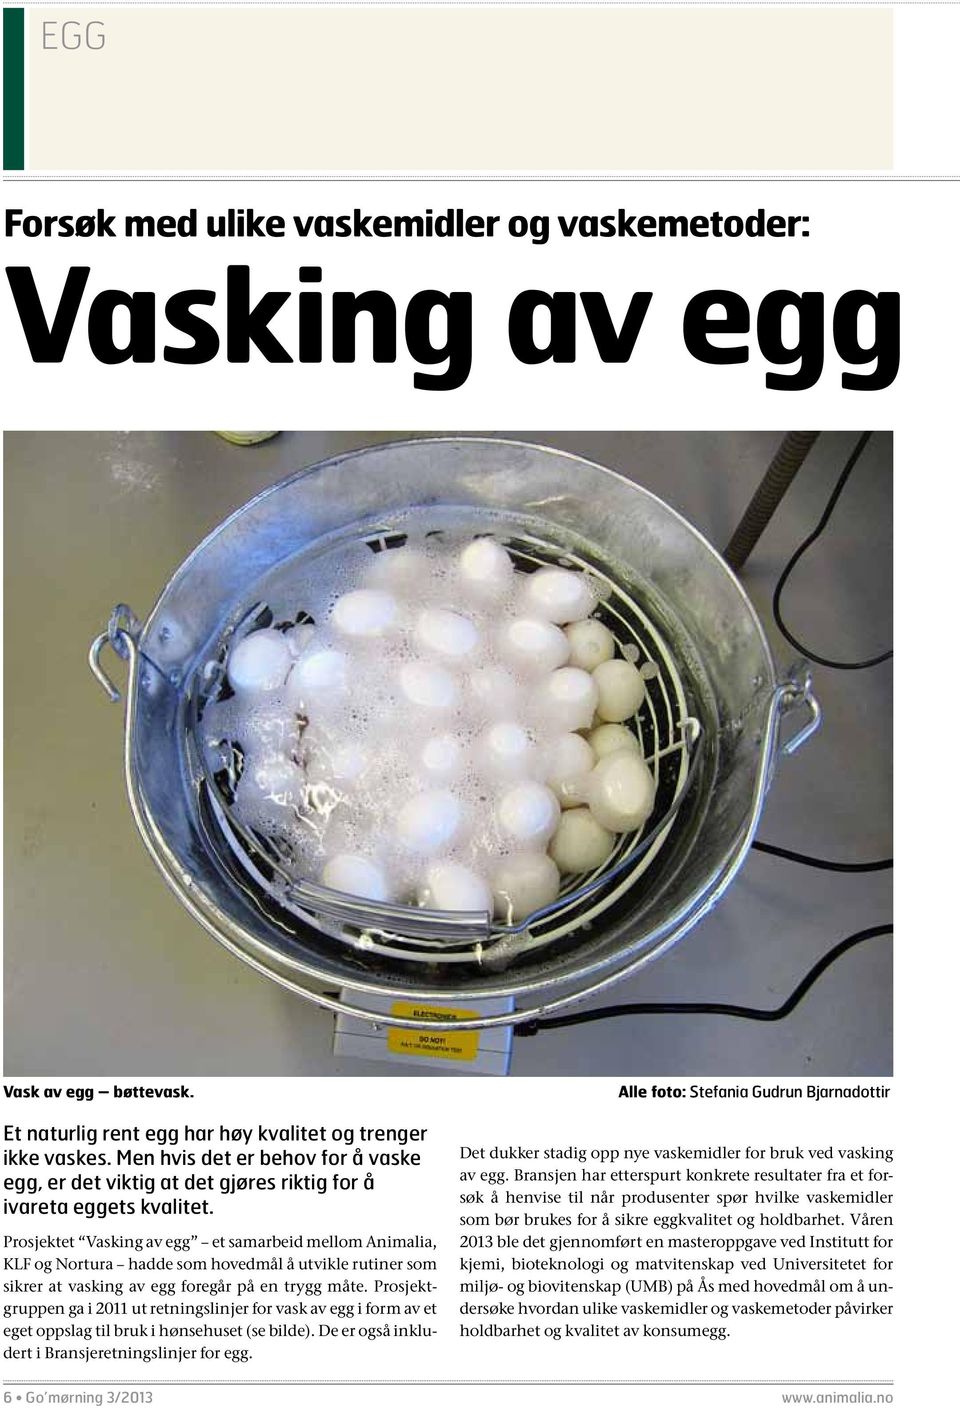 Prosjektet Vasking av egg et samarbeid mellom Animalia, KLF og Nortura hadde som hovedmål å utvikle rutiner som sikrer at vasking av egg foregår på en trygg måte.